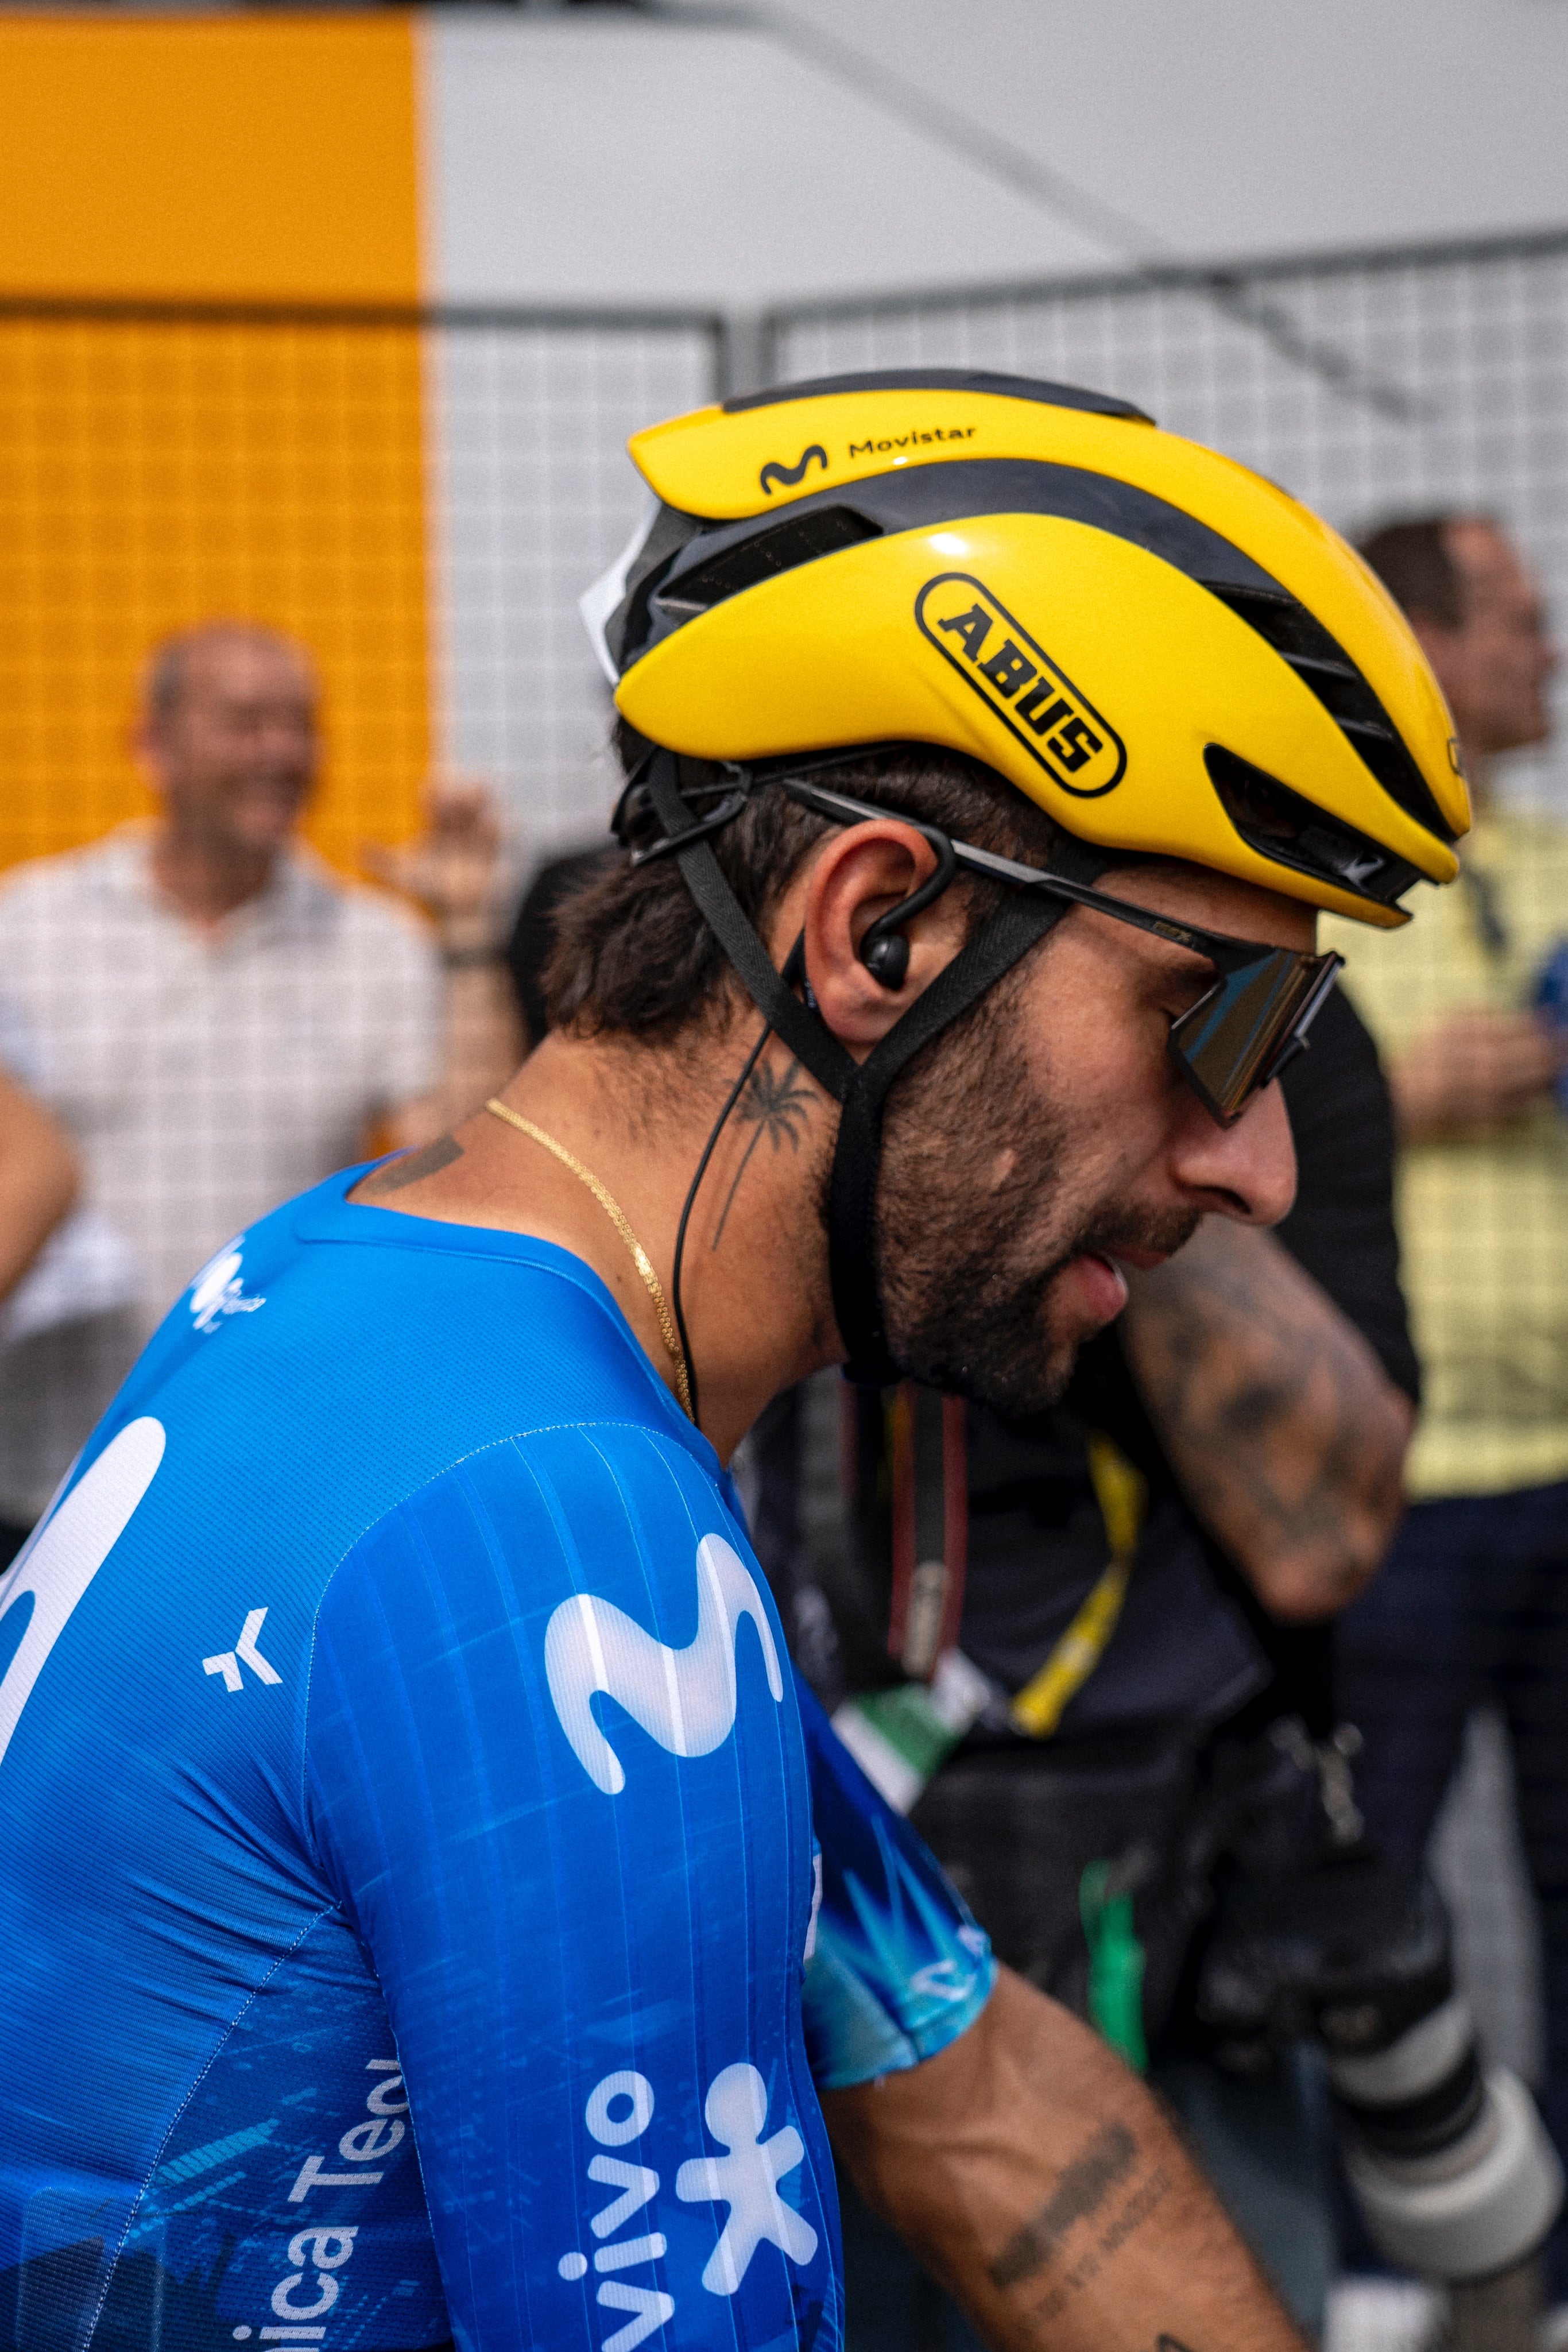 Fernando Gaviria ha ganado dos etapas del Tour de Francia, ambas en la edición del 2018 - crédito Movistar Team